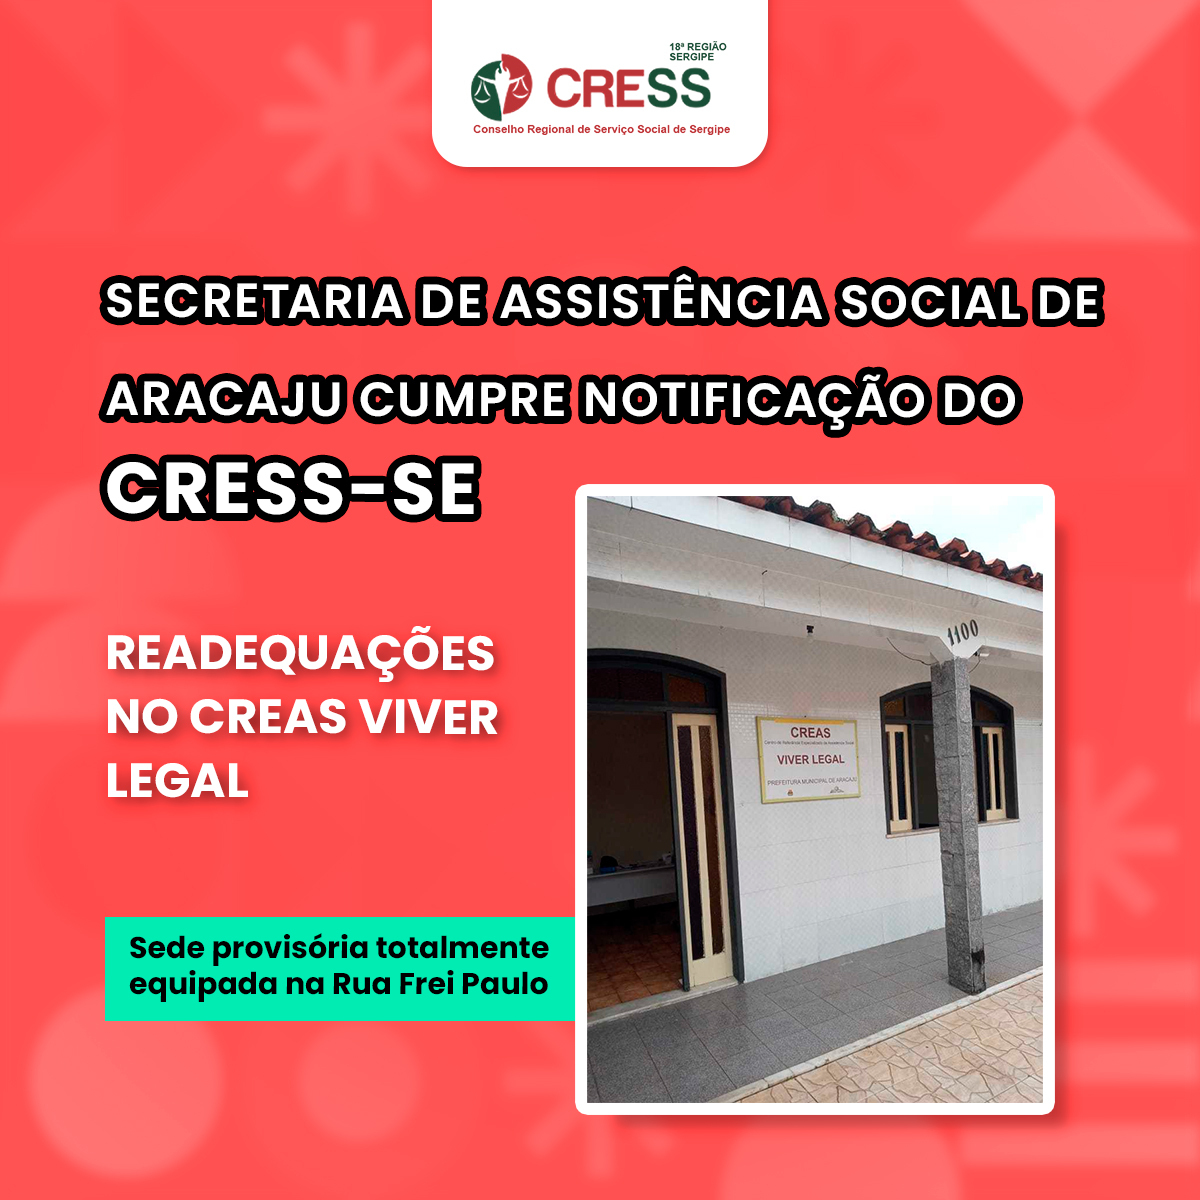 Secretaria de Assistência Social de Aracaju cumpre notificação CRESS-SE e CREAS Viver Legal é readequado em sede provisória